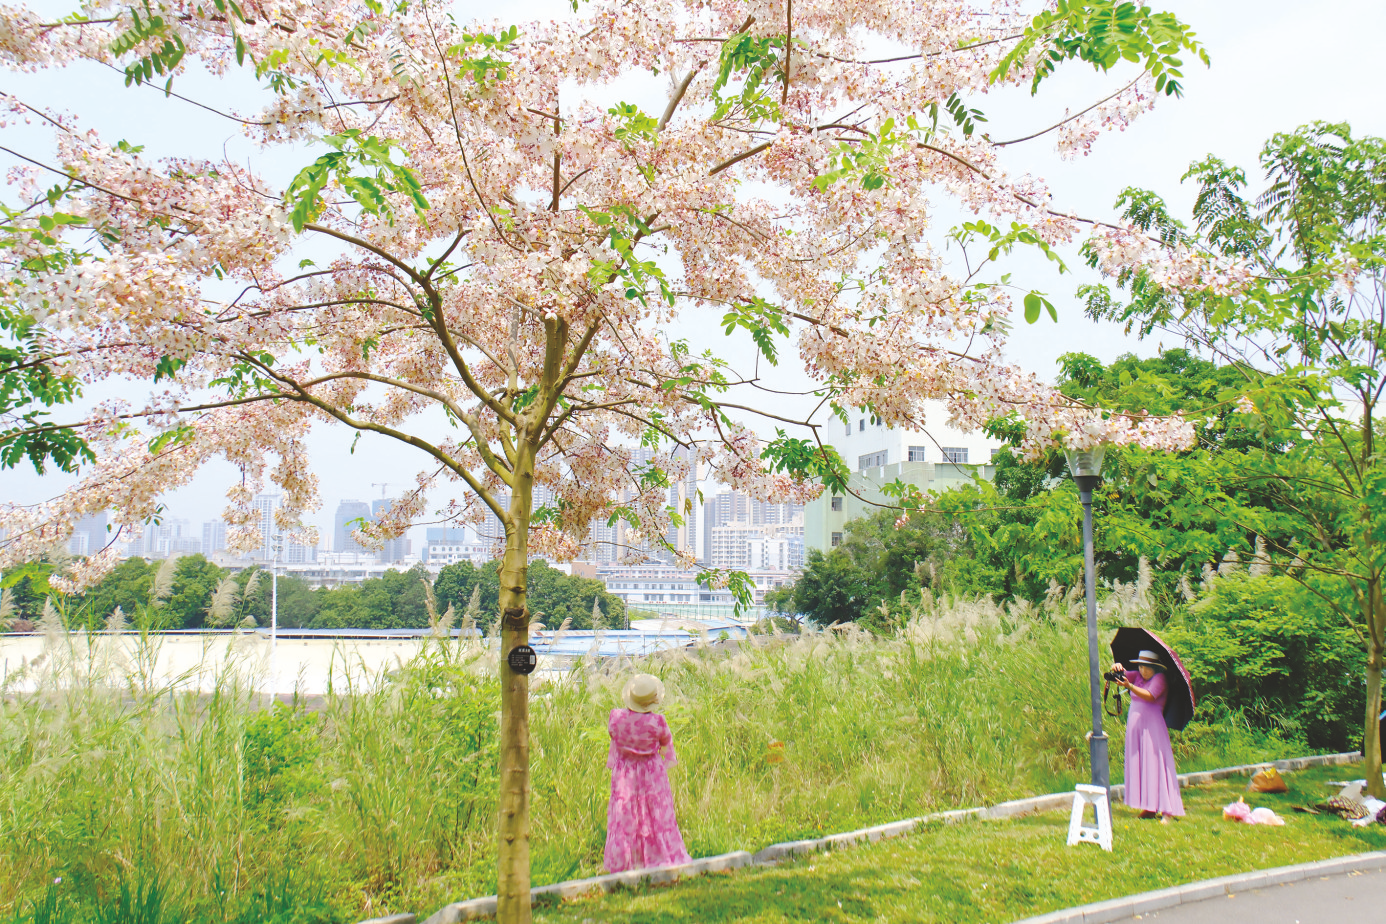     游客在“泰国樱花”树下拍照留念。    本报记者宋延康 摄